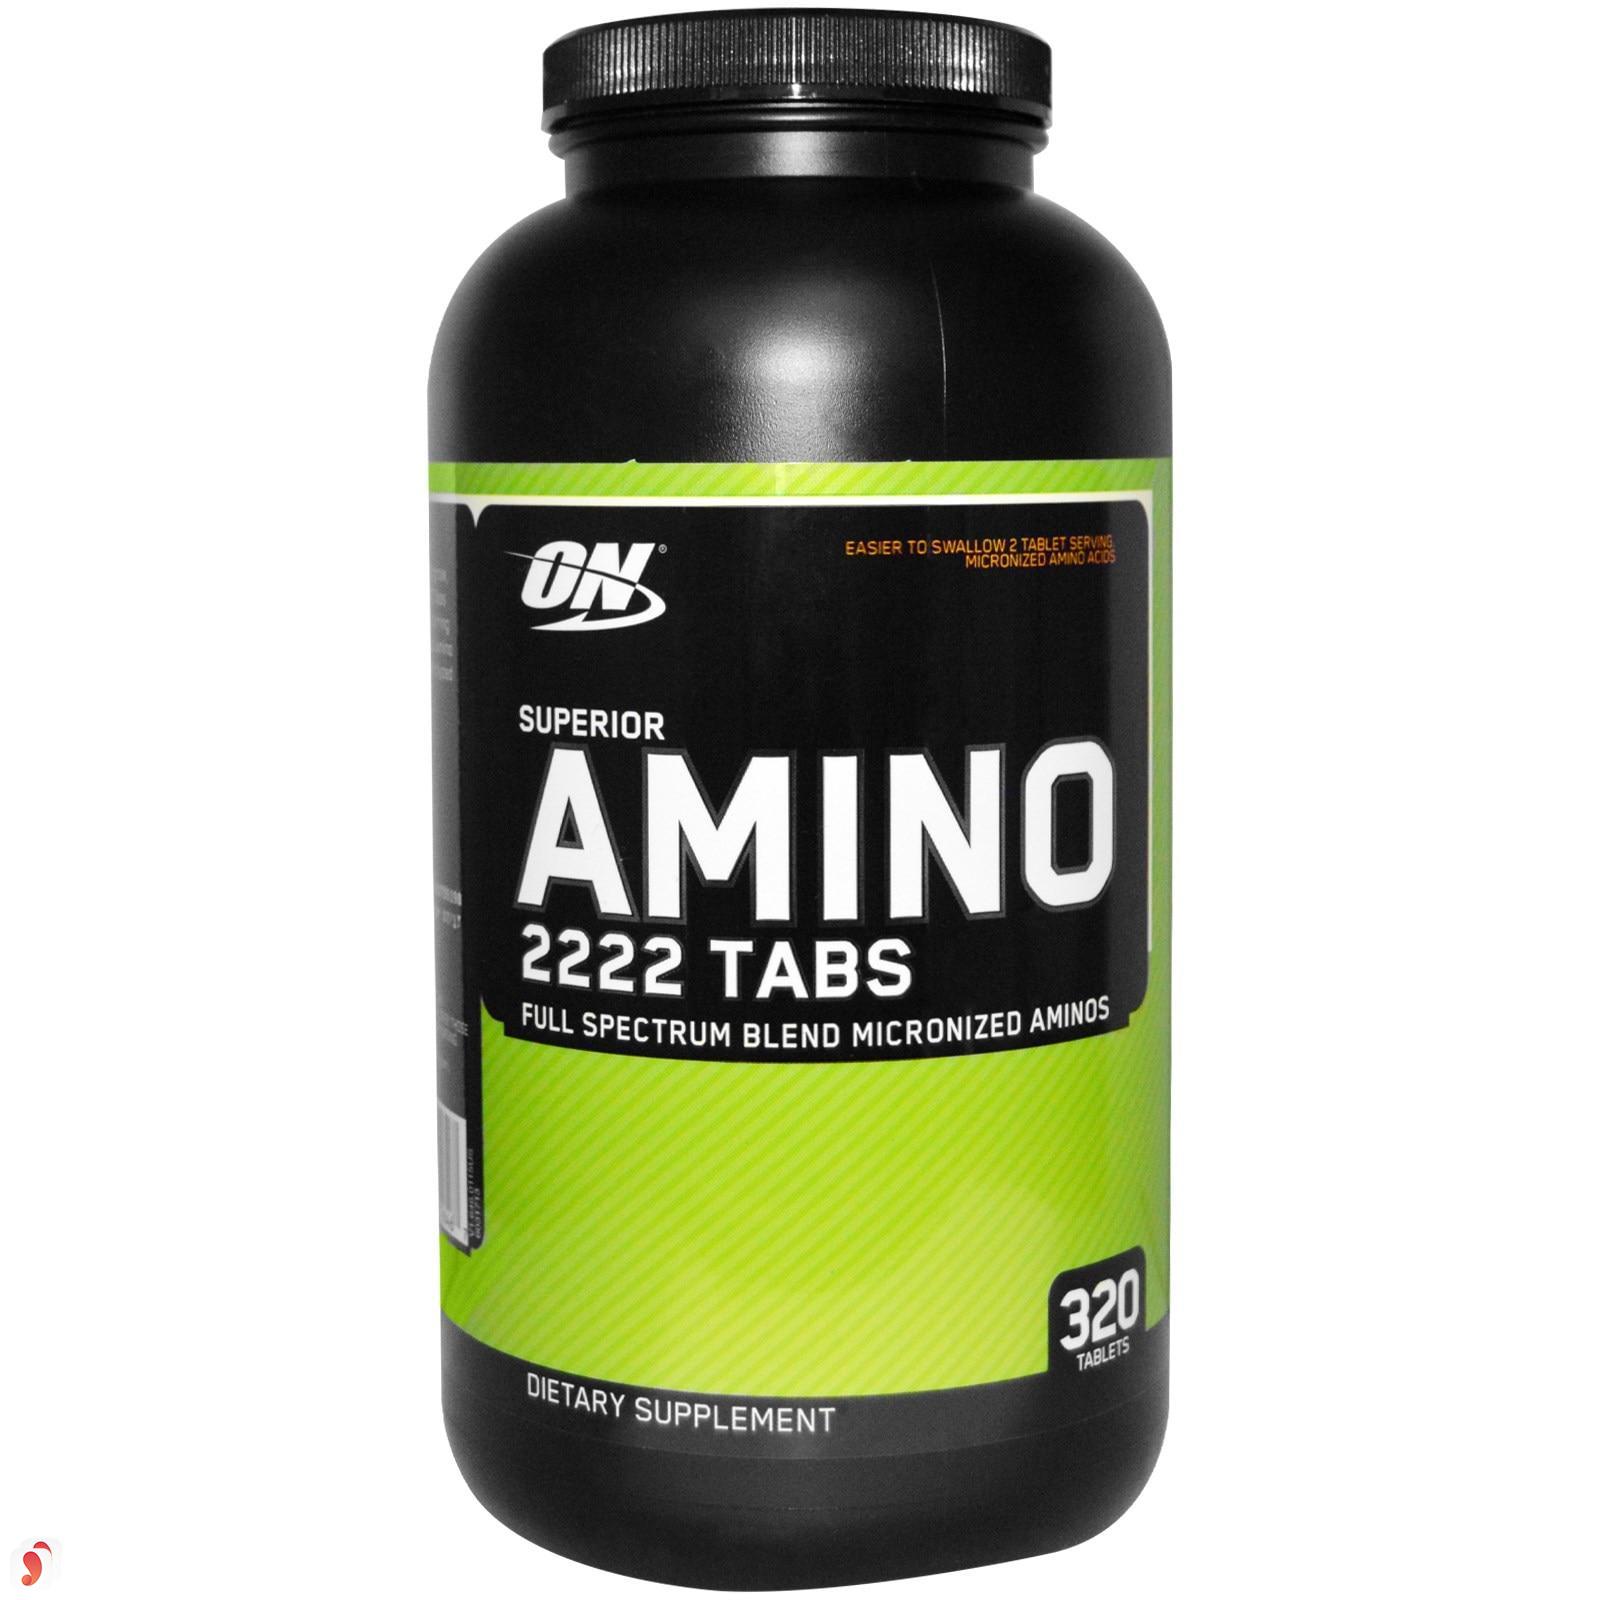 thực phẩm chức năng Amino 2222